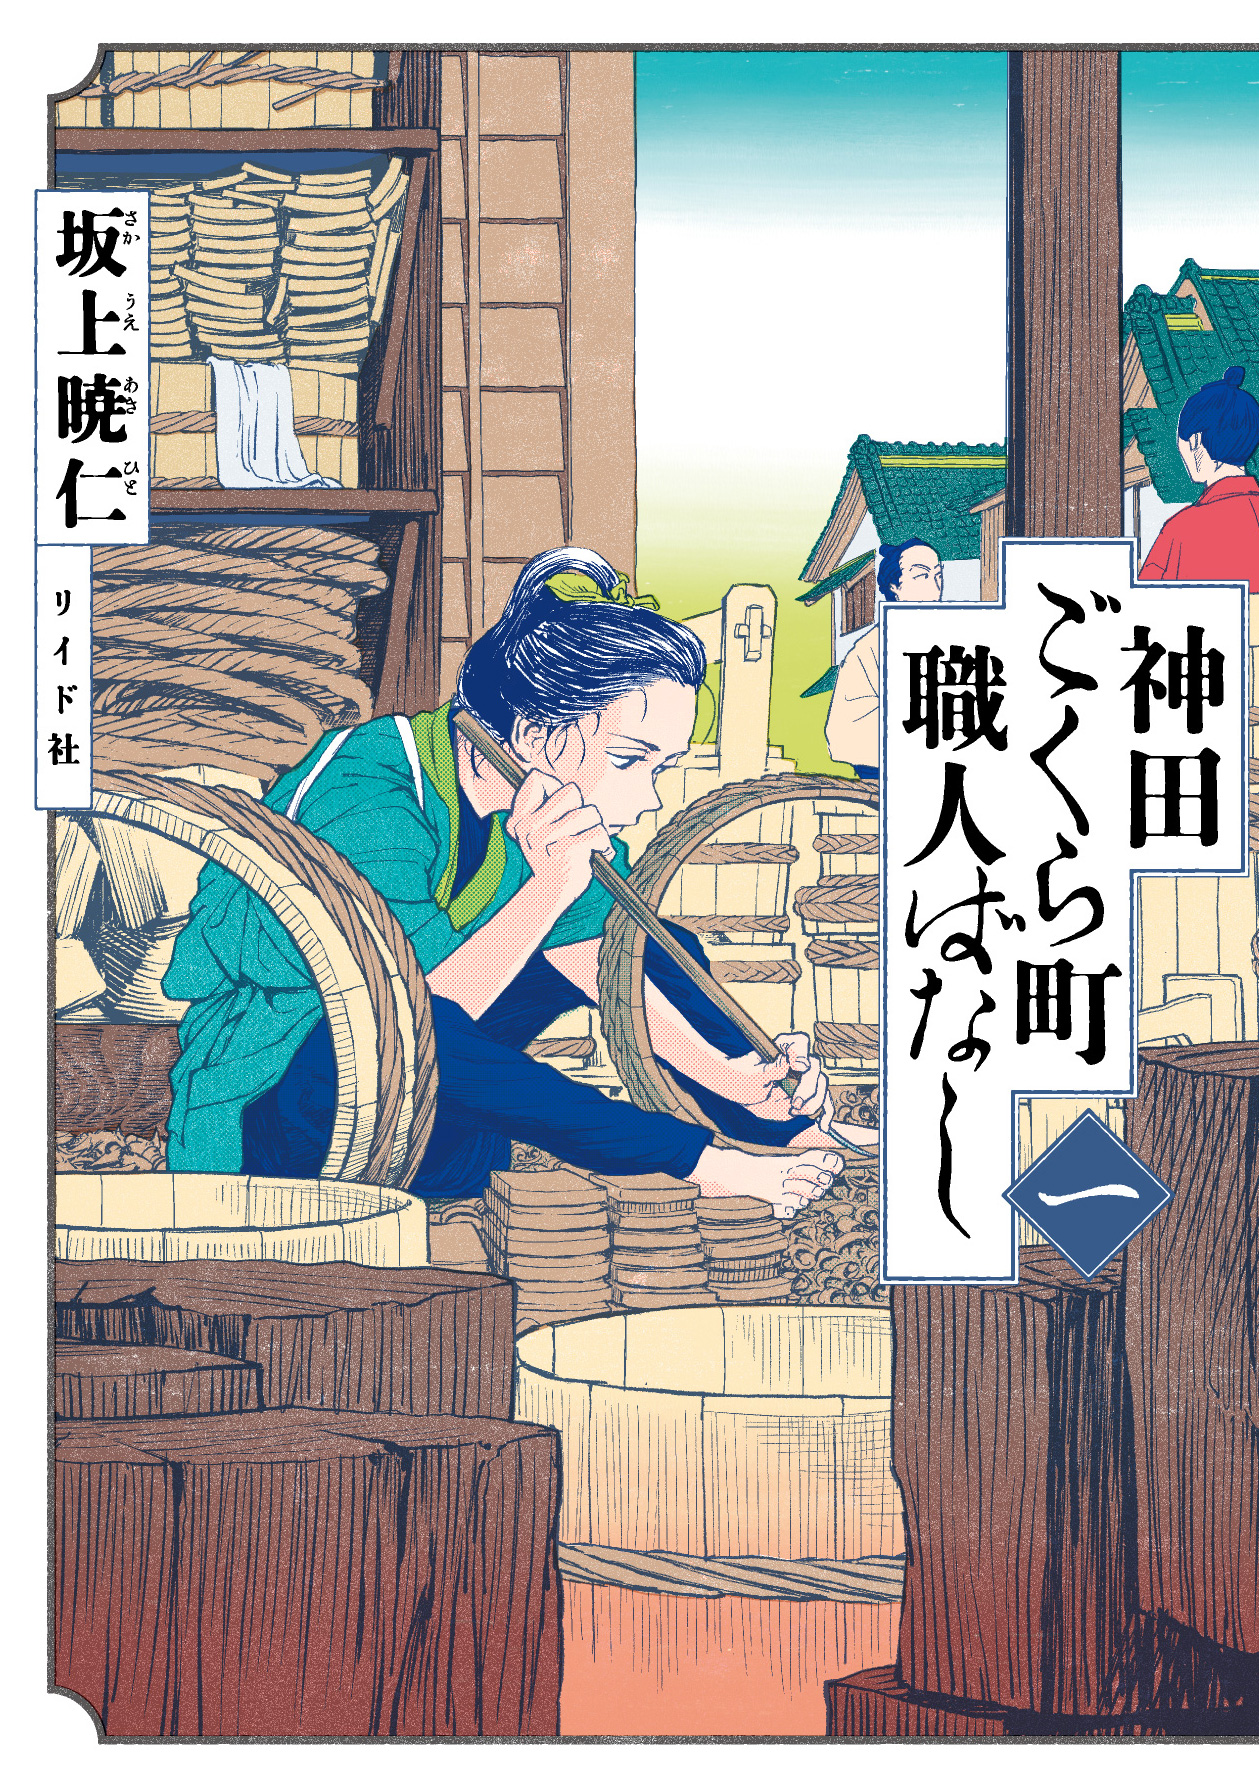 Kanda Gokura-Chou Shokunin-Banashi Vol.1 Chapter 1: The Cooper - Picture 1